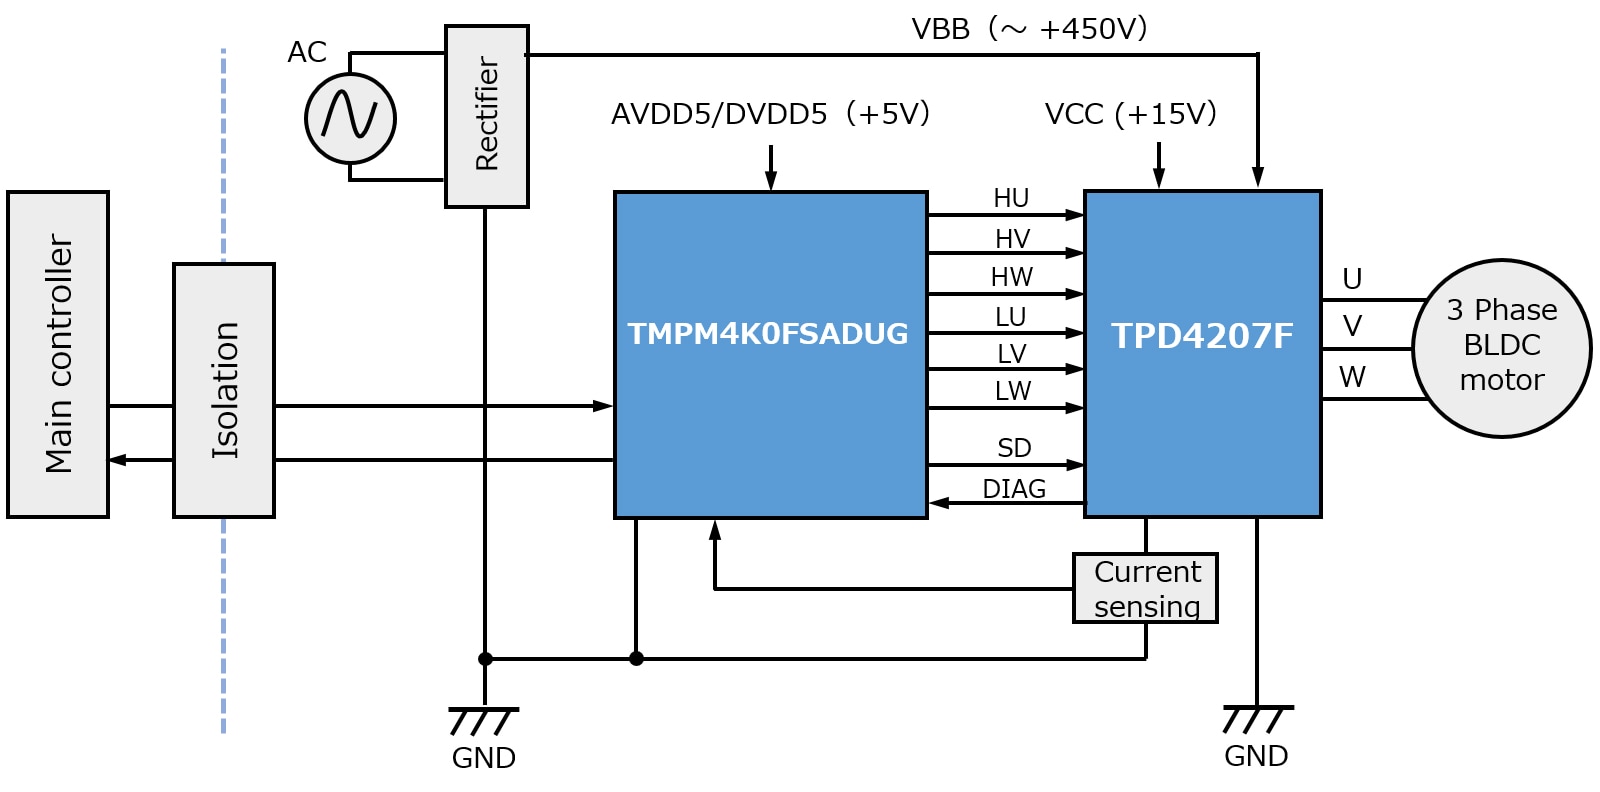 これは、TPD4207F 小型コンプレッサーモーター駆動応用回路の応用ブロック図です。